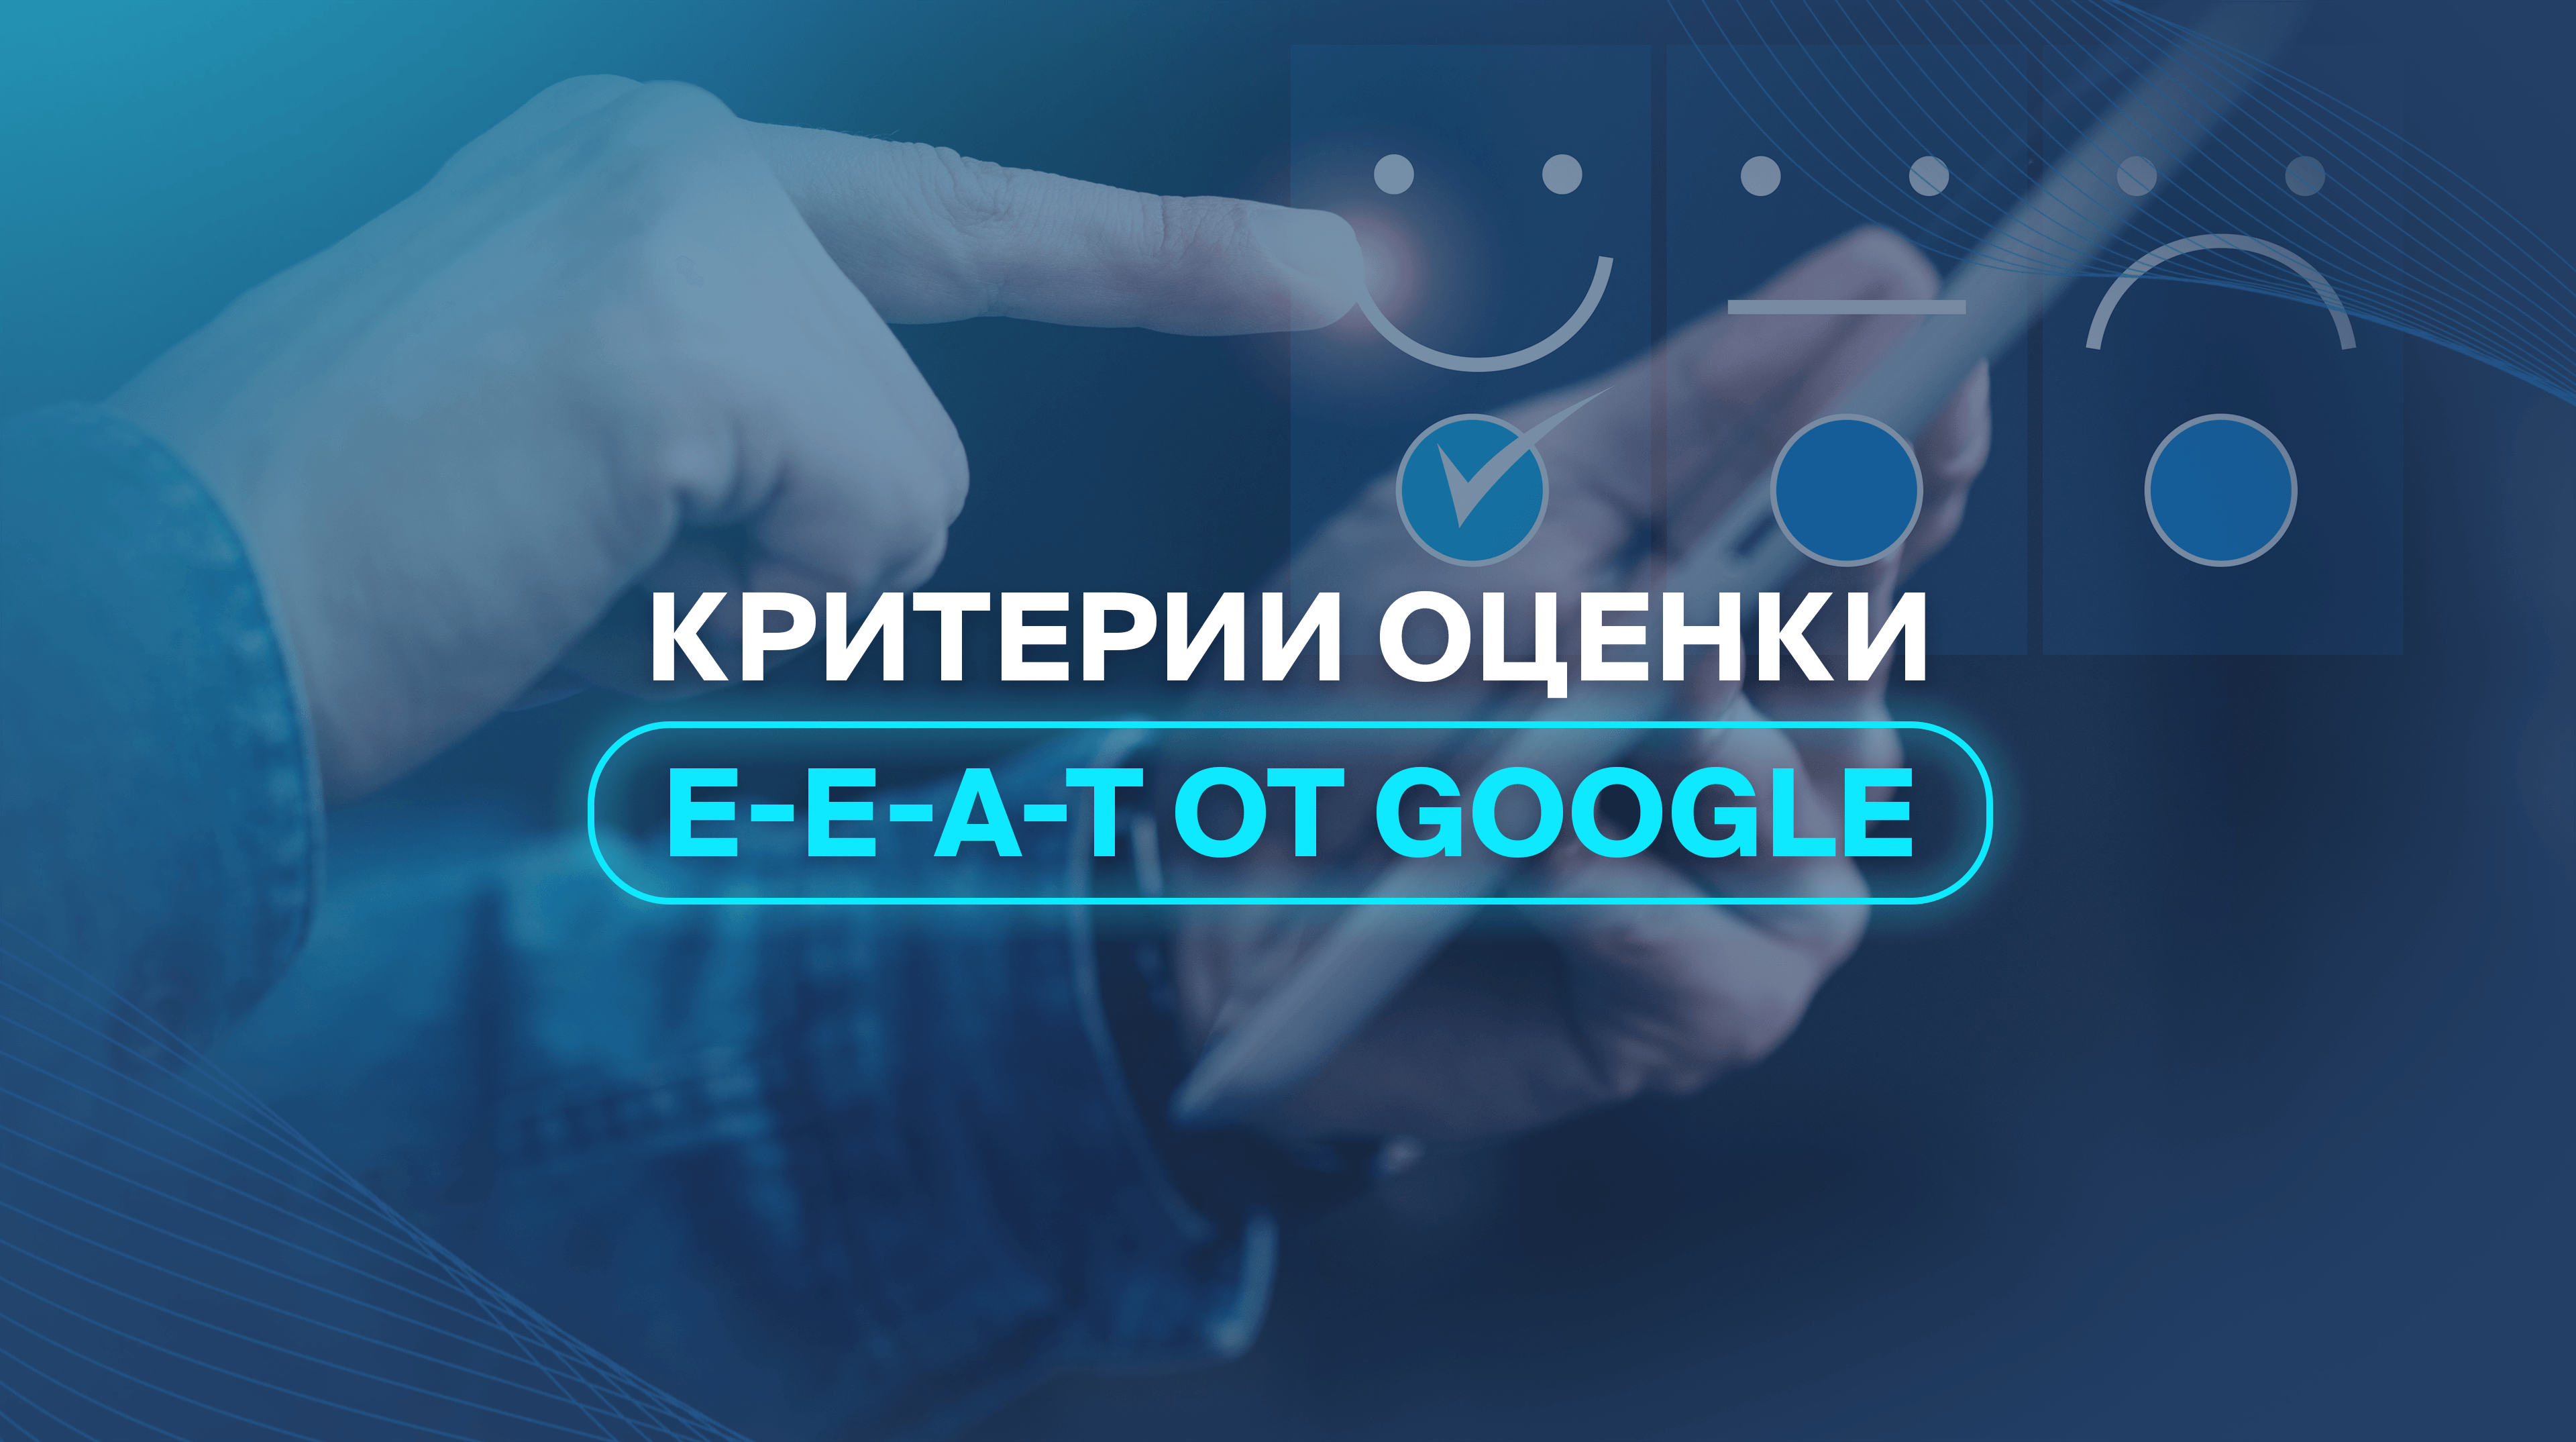 Критерии оценки E-E-A-T от Google